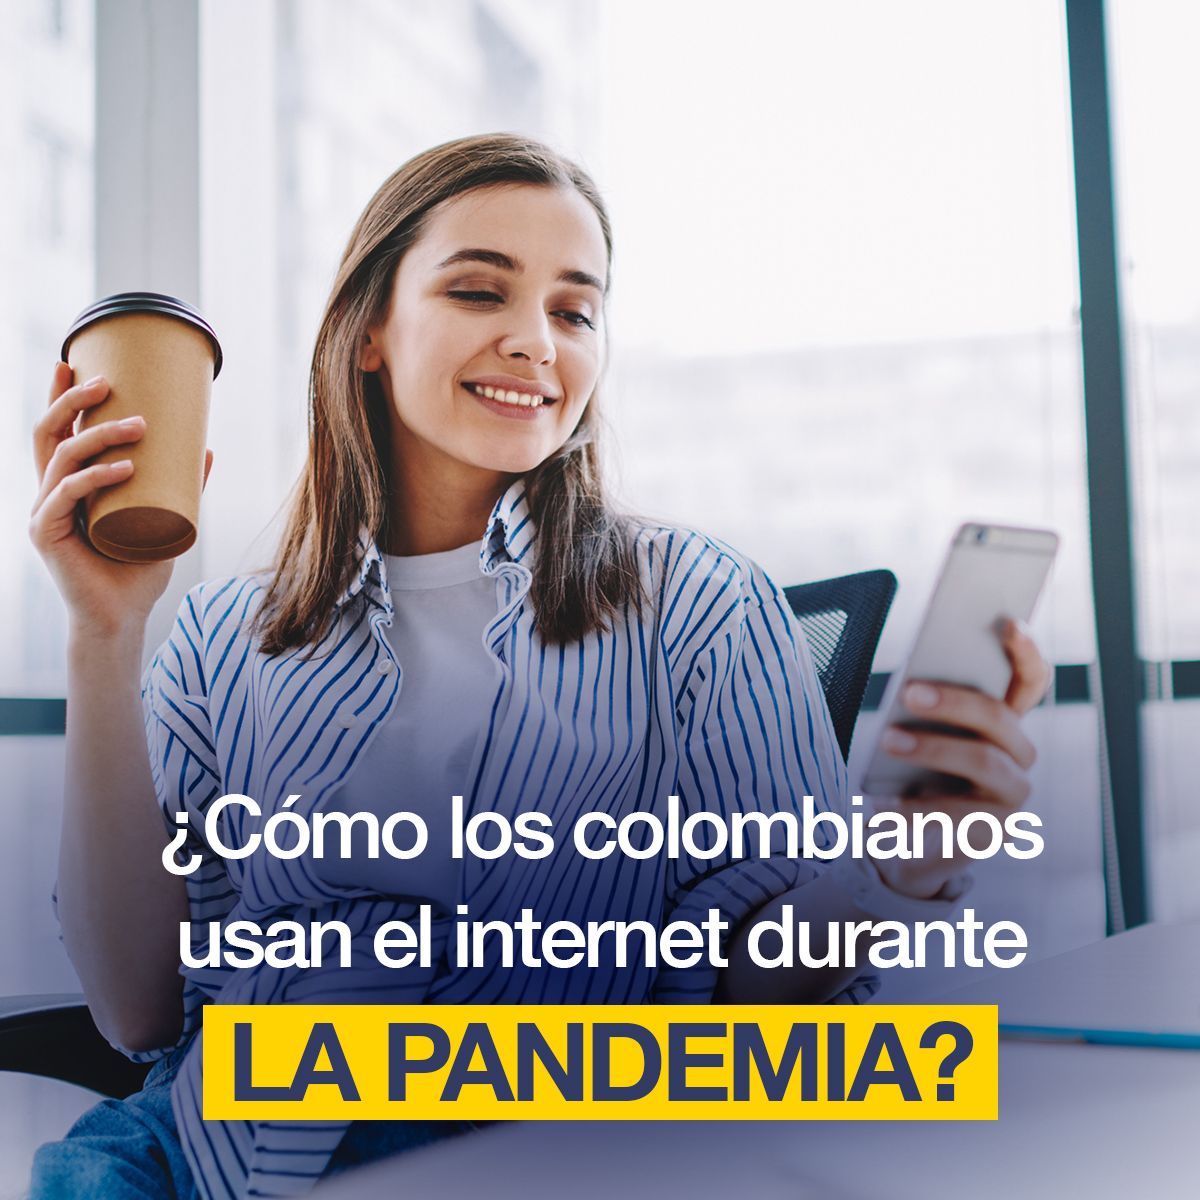 ¿Cómo los colombianos usan el internet durante la pandemia?